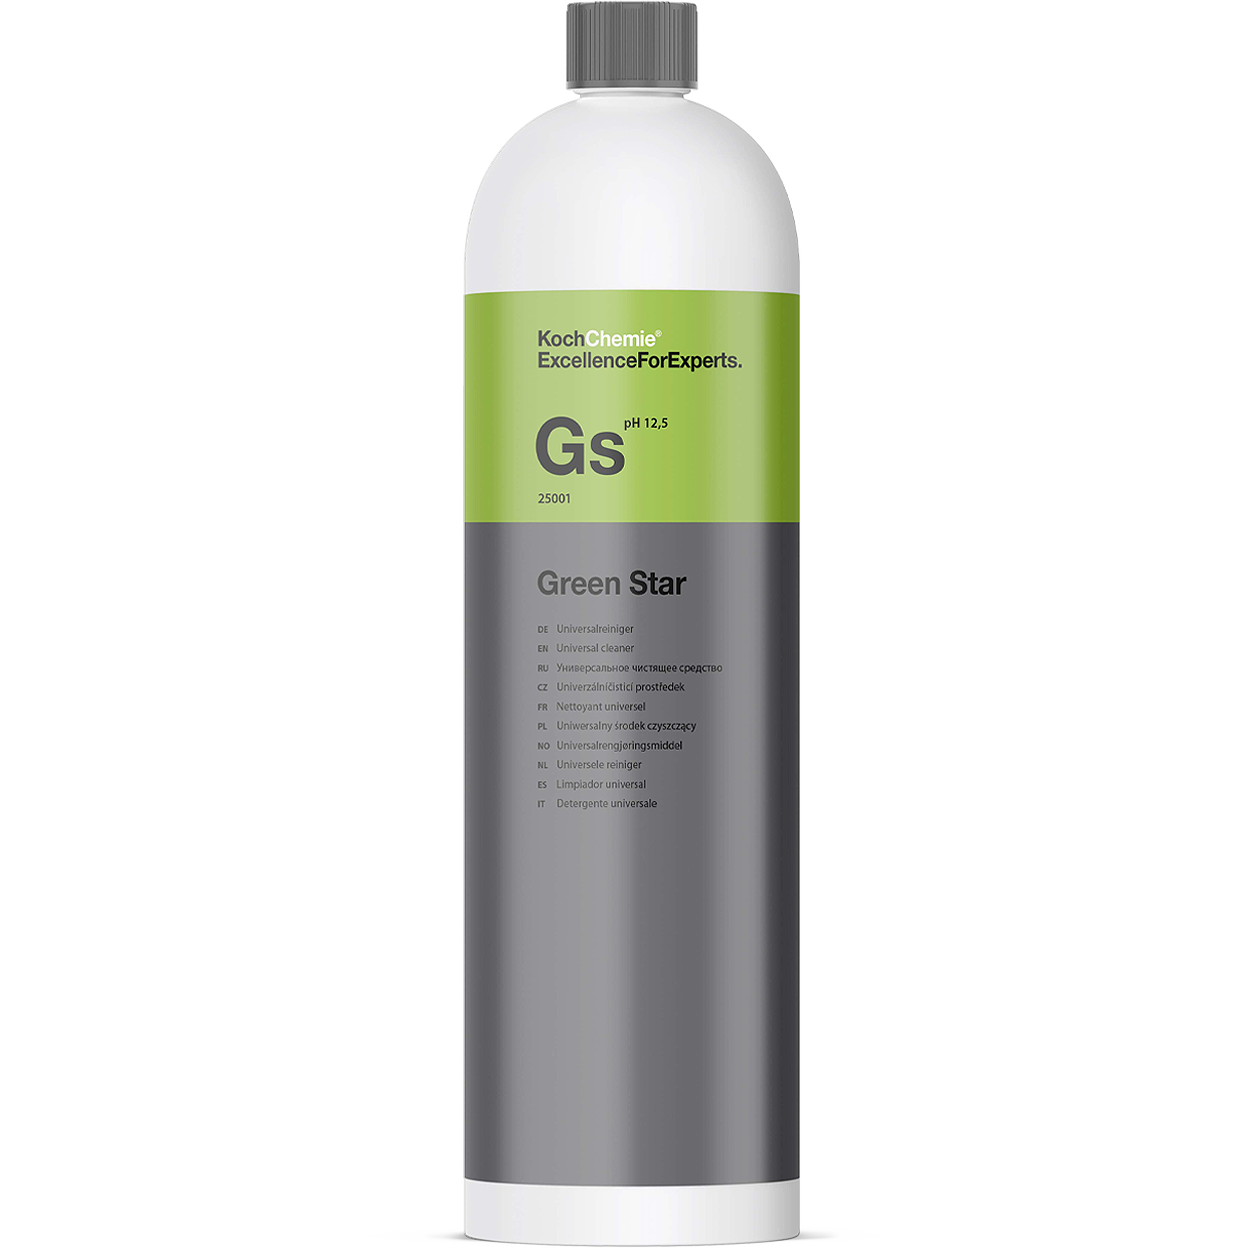 Koch Chemie GreenStar Gs 1L Universalreiniger